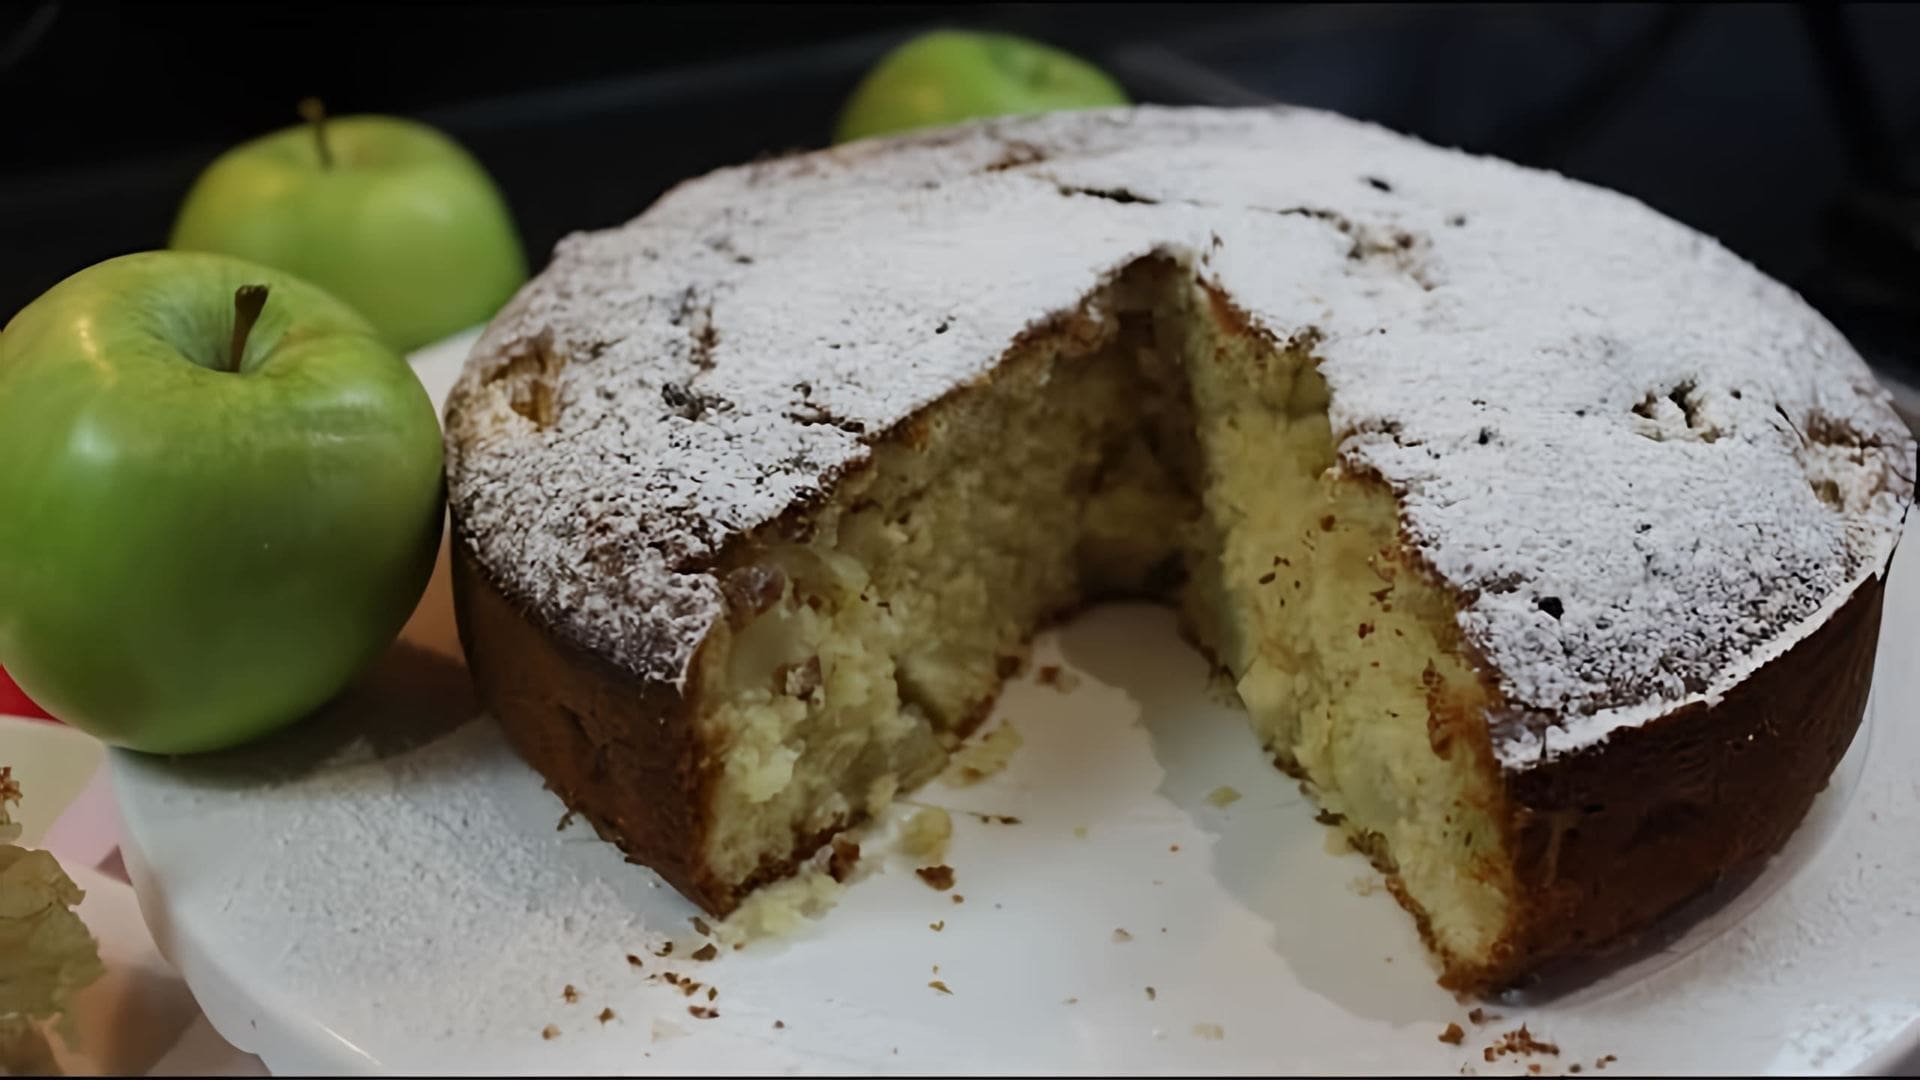 В этом видео демонстрируется процесс приготовления яблочного пирога с сыром маскарпоне